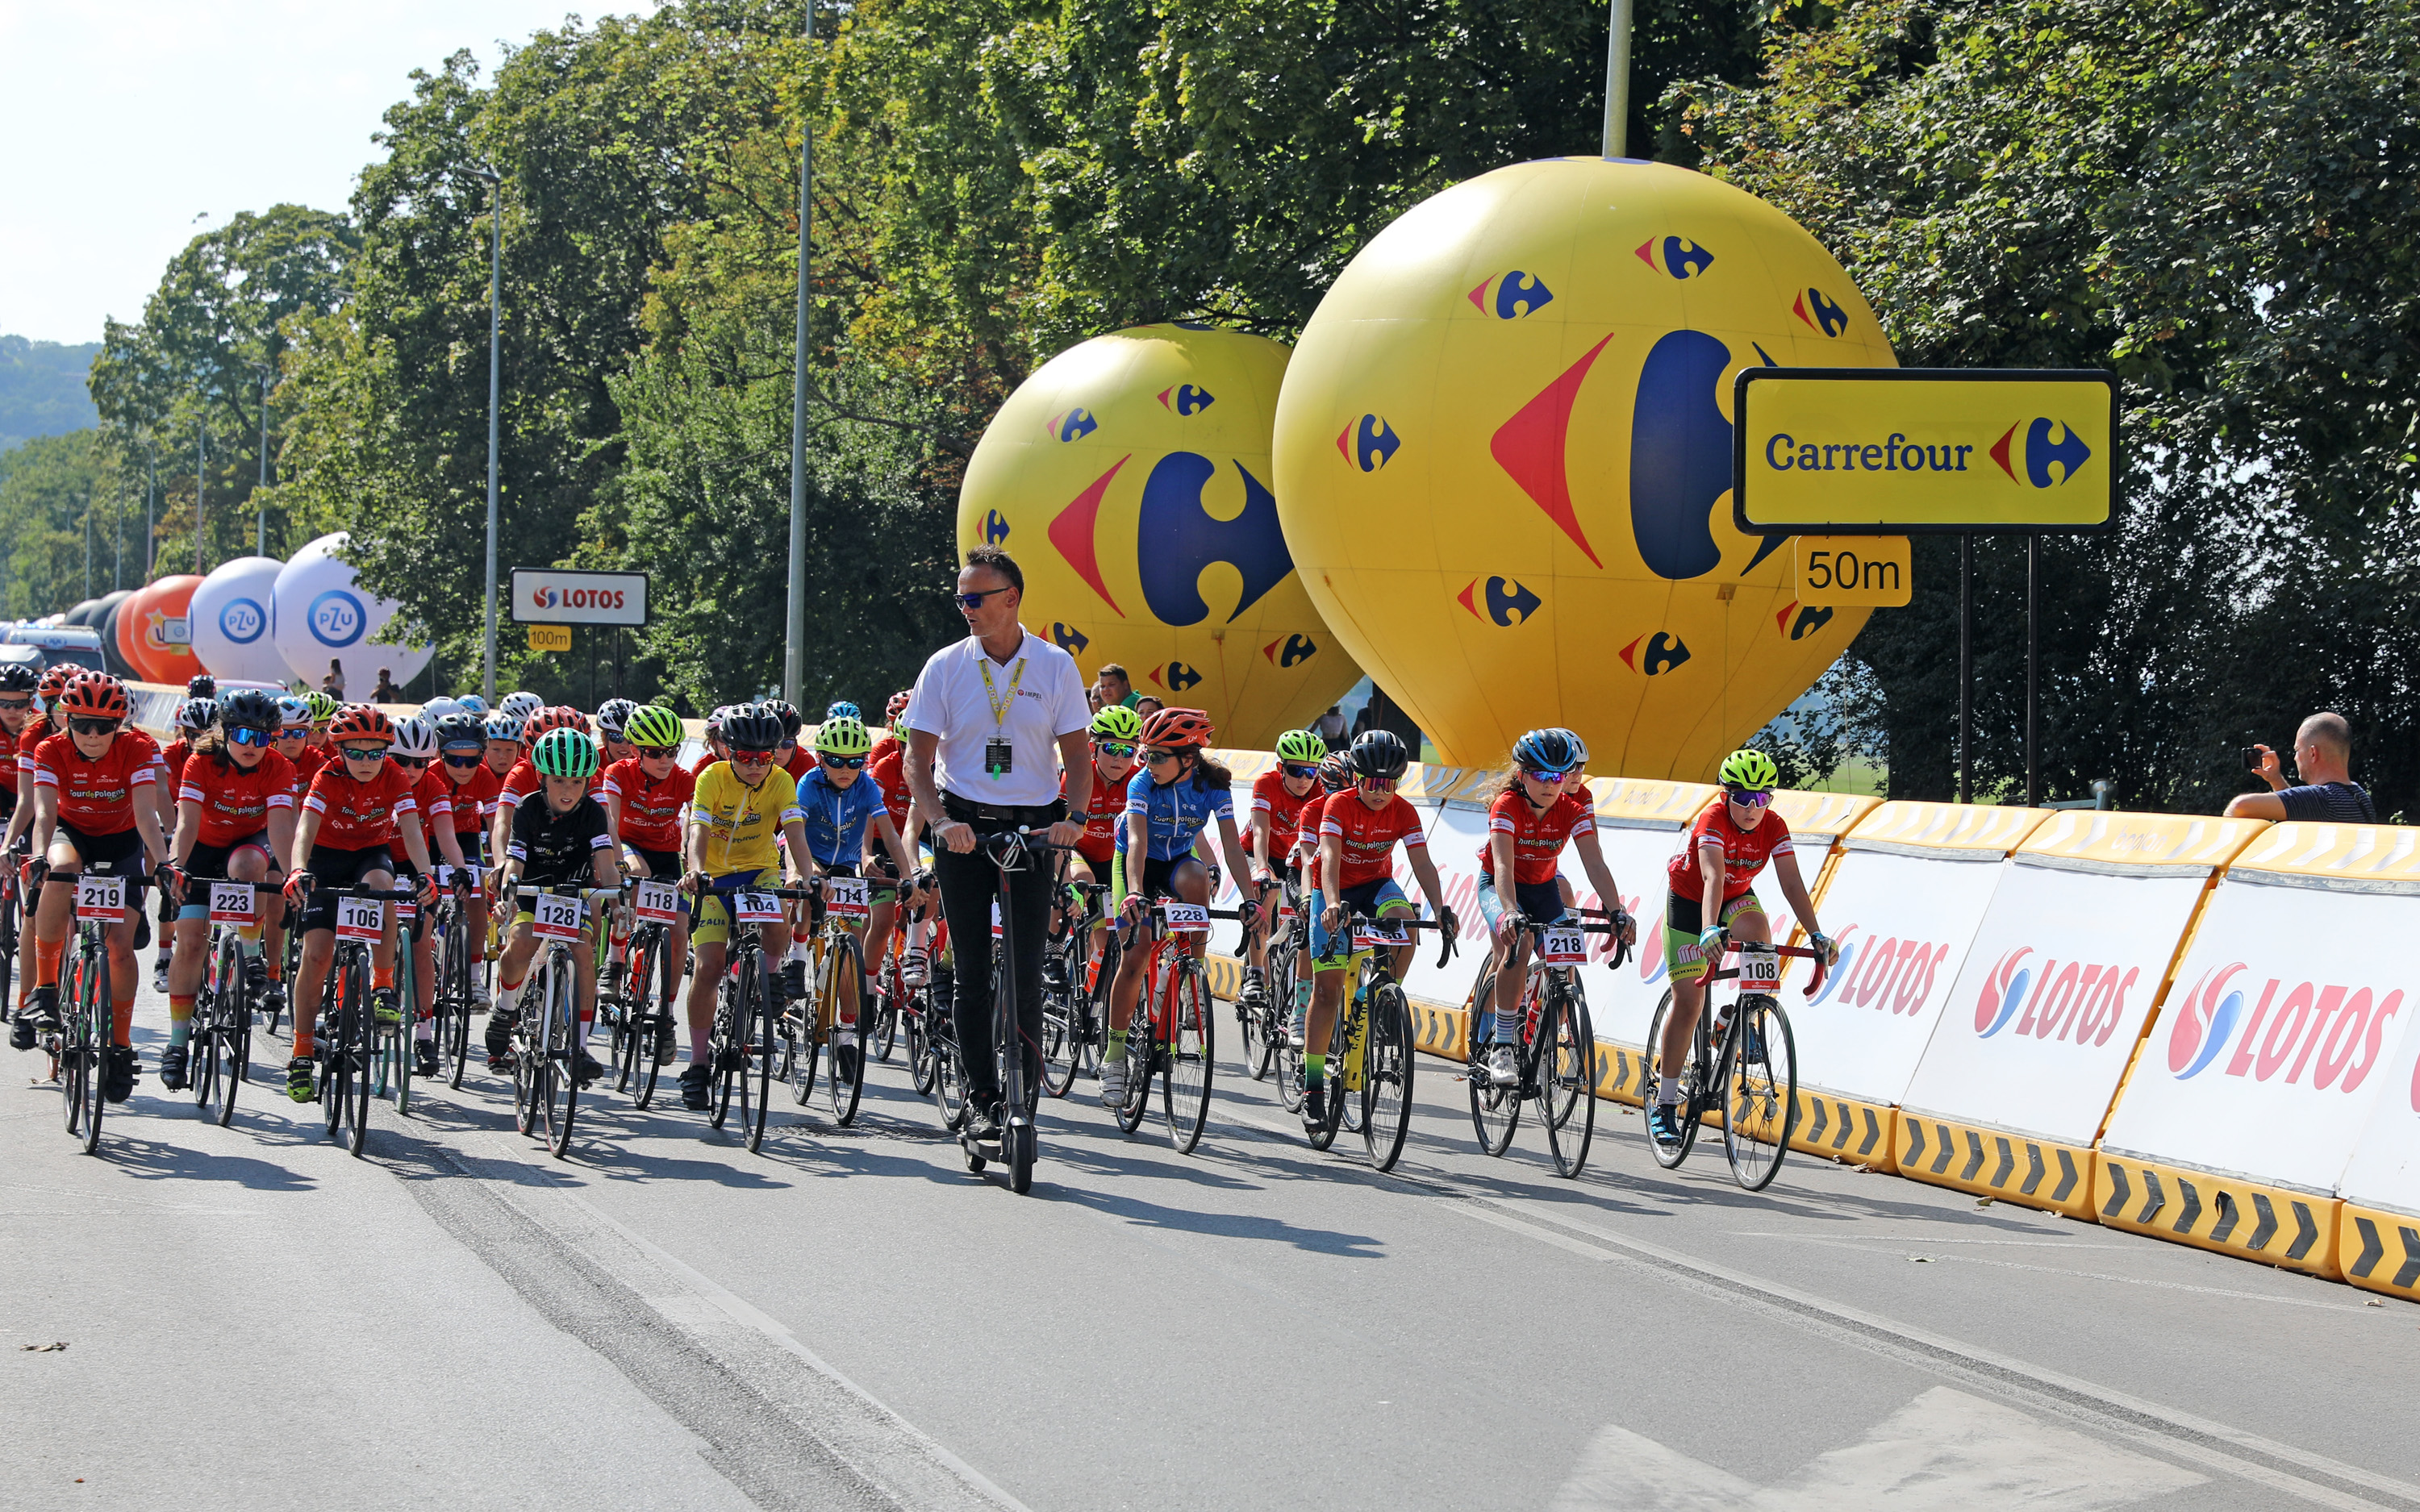 Grupa Impel zadbała o bezpieczeństwo uczestników Tour de Pologne